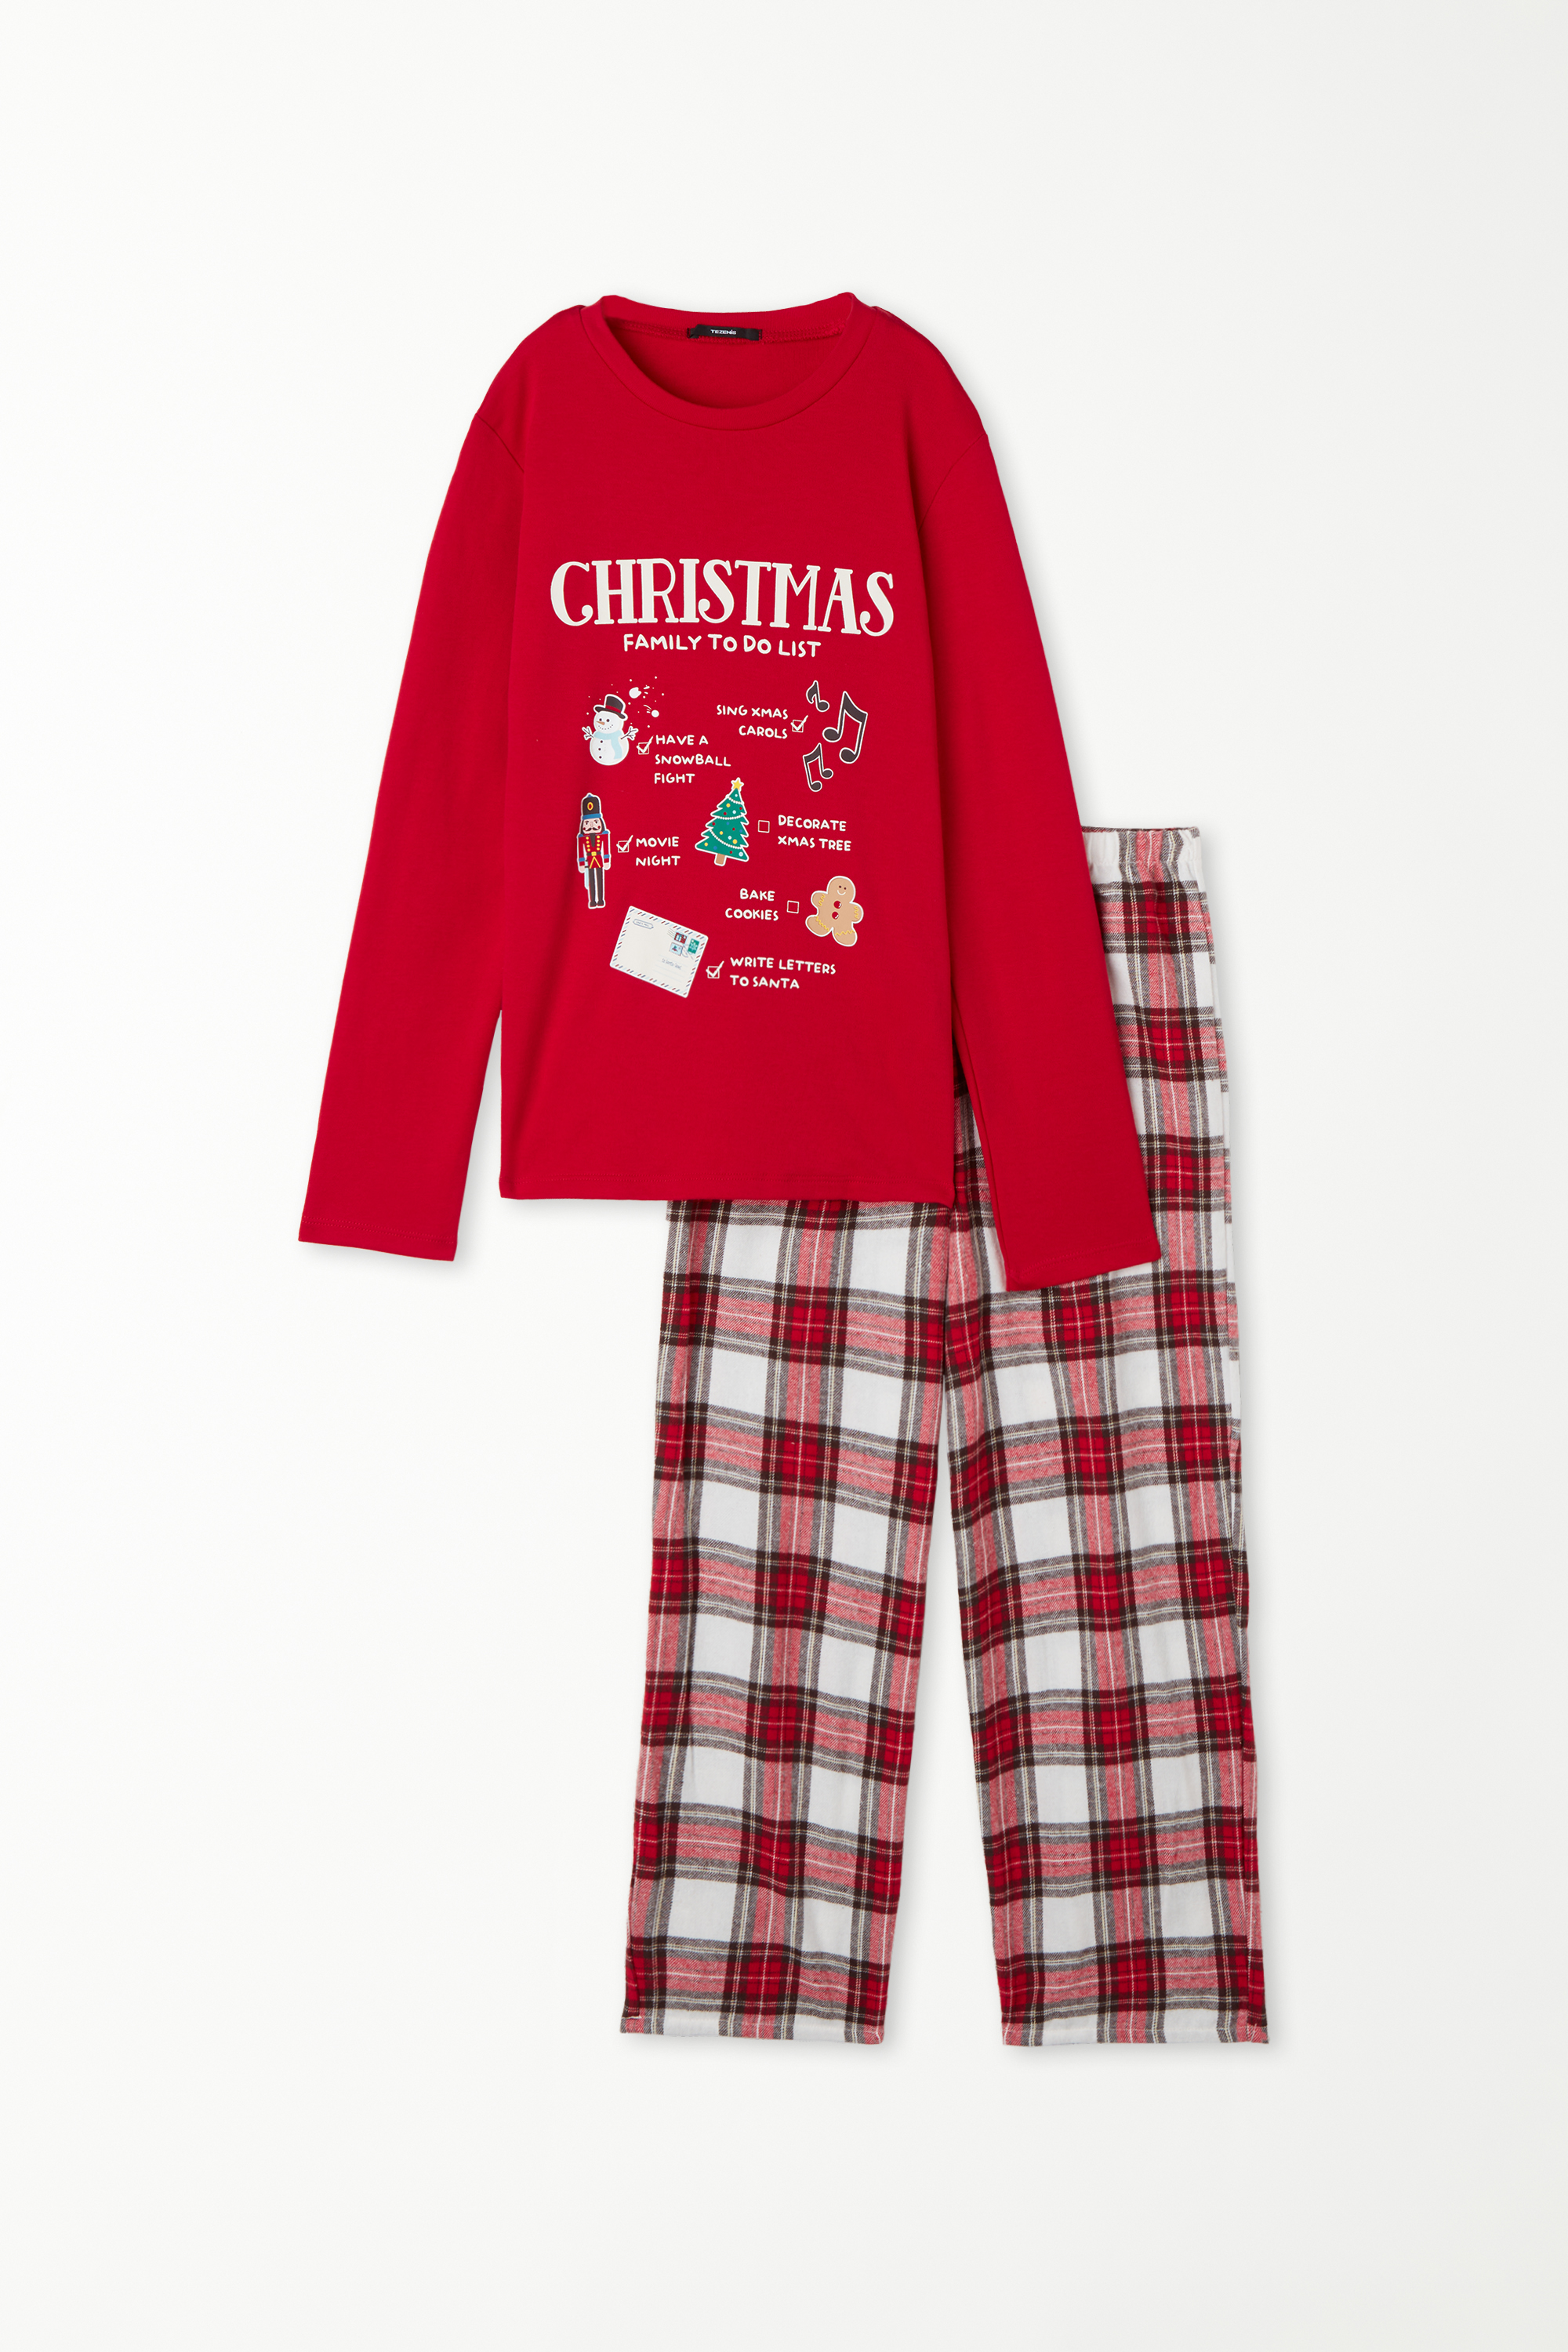 Pyjama Long Coton Épais Imprimé « To do list » Enfant Unisexe